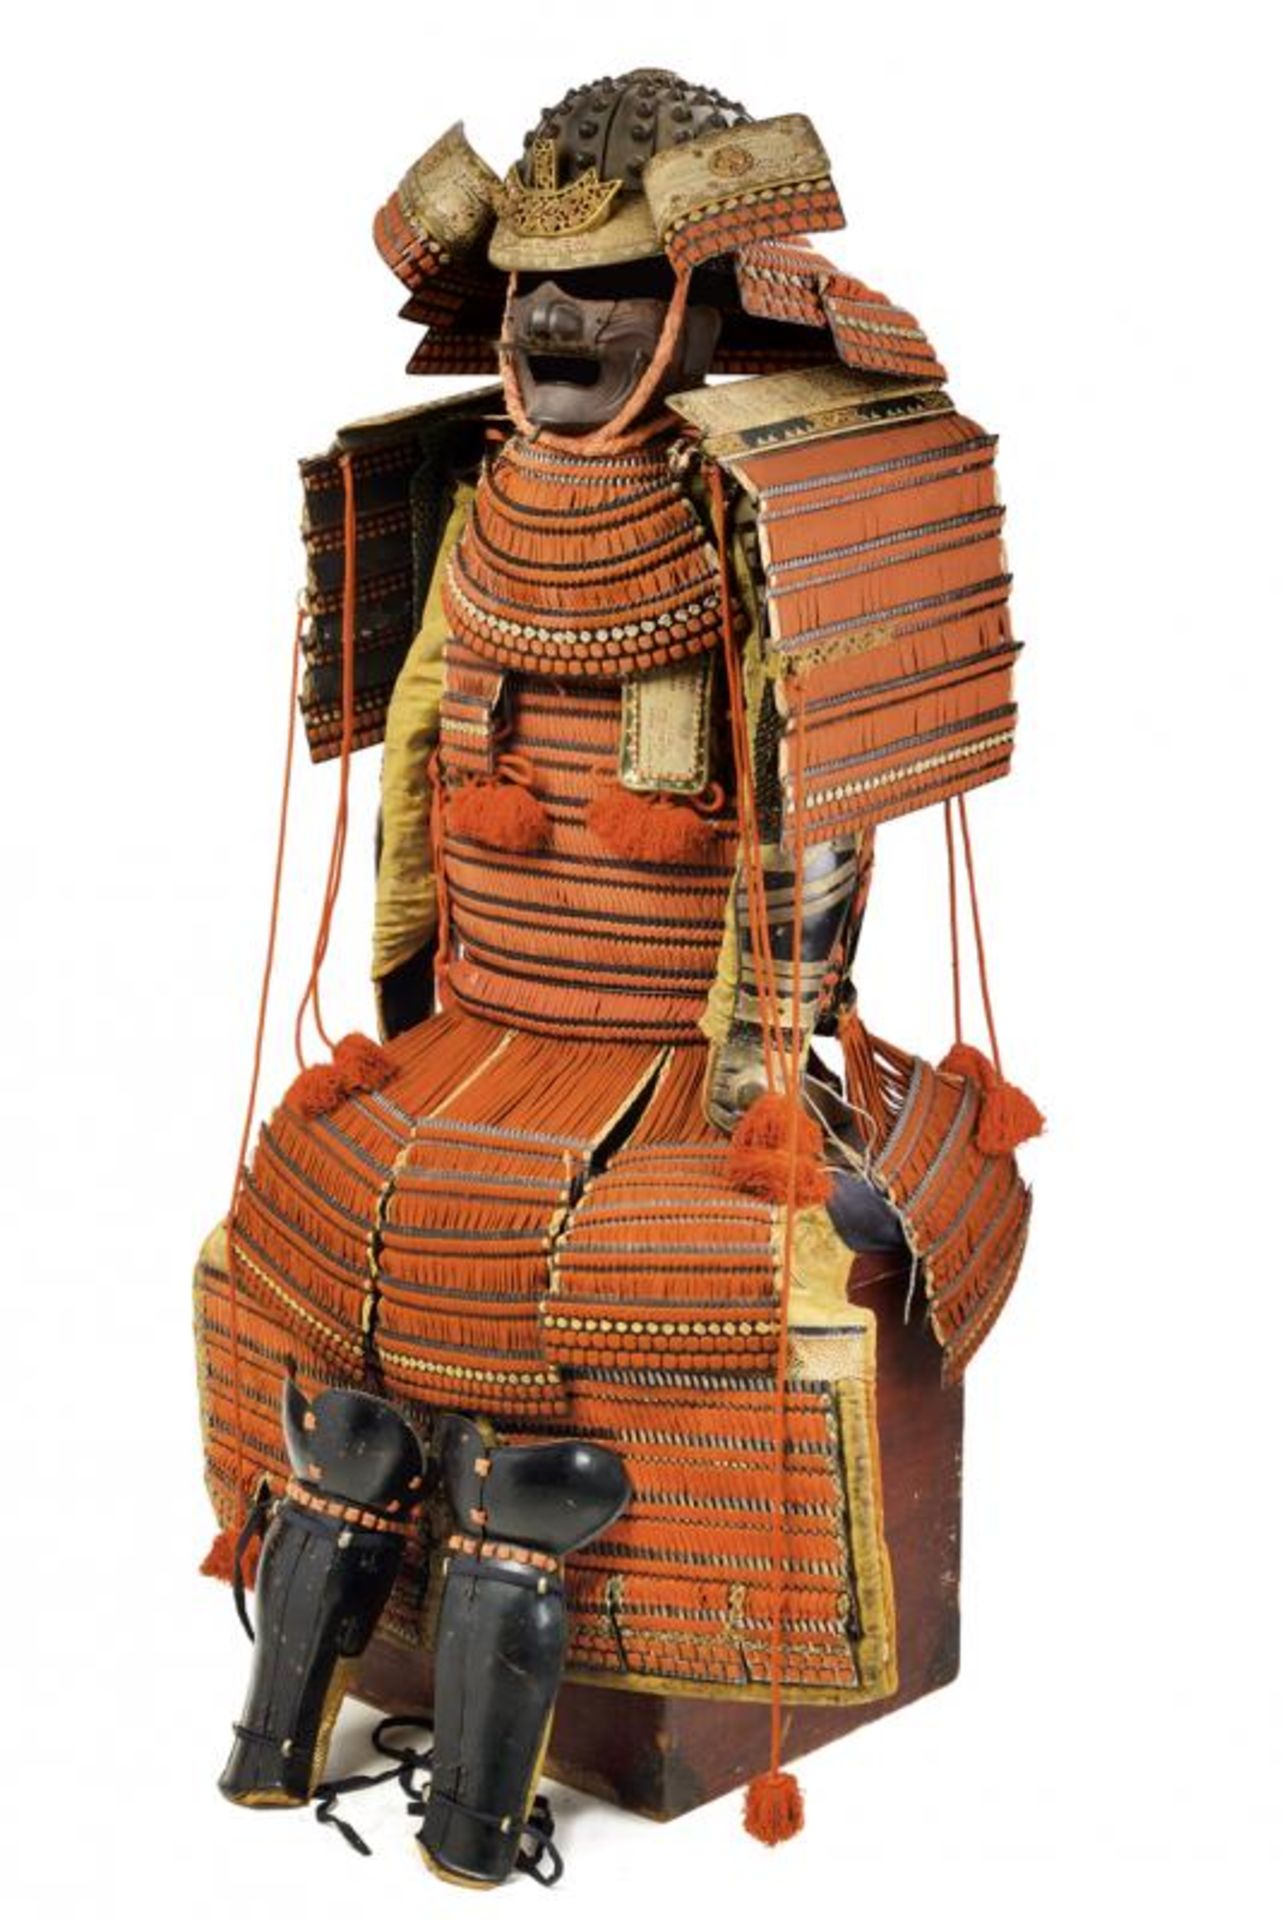 A fine Yoroi (Samurai armour)